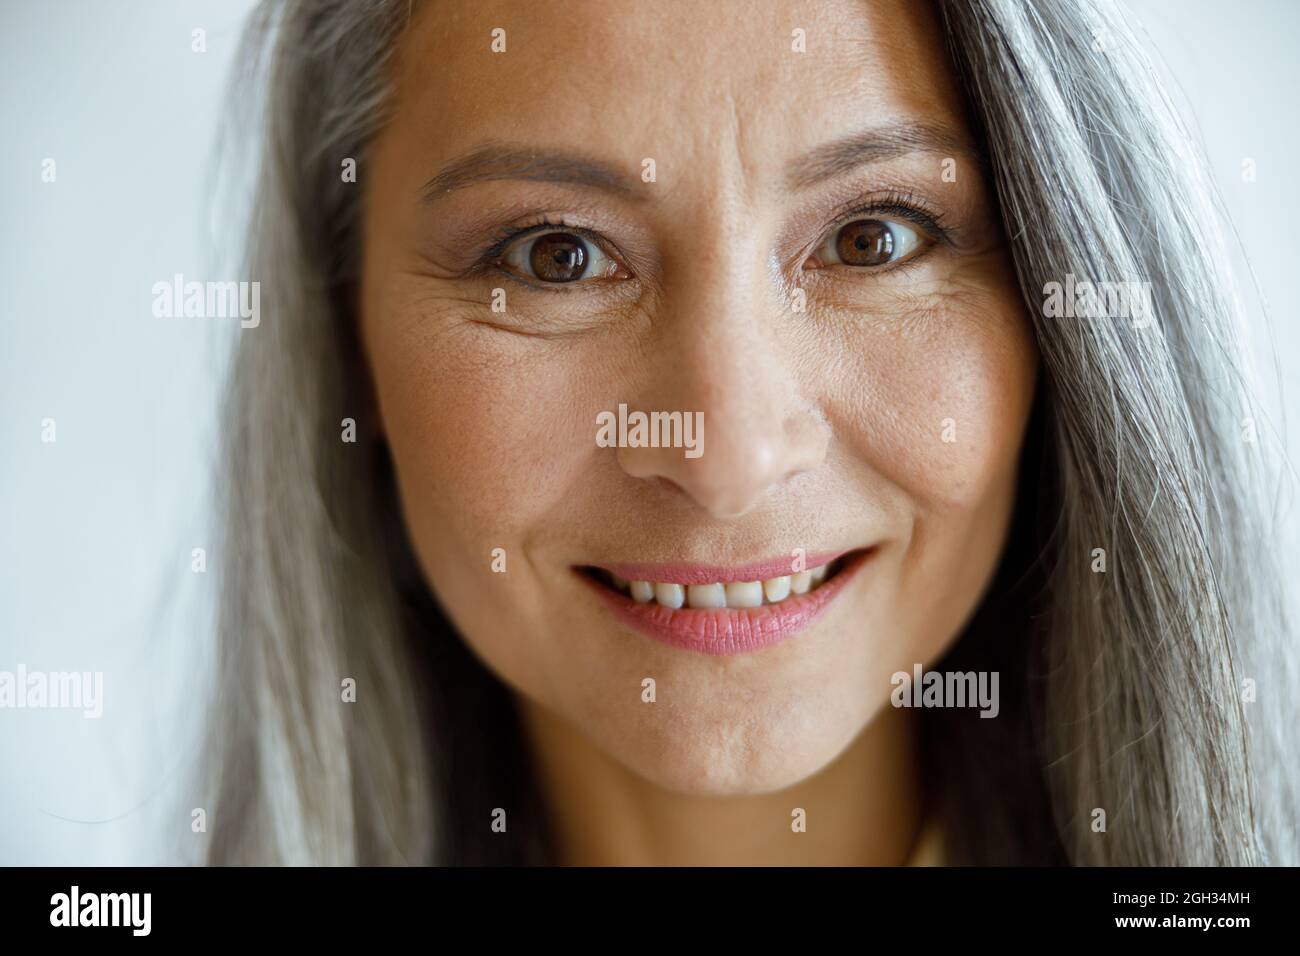 Allegra signora con capelli d'argento con makeup guarda in fotocamera su sfondo grigio chiaro Foto Stock